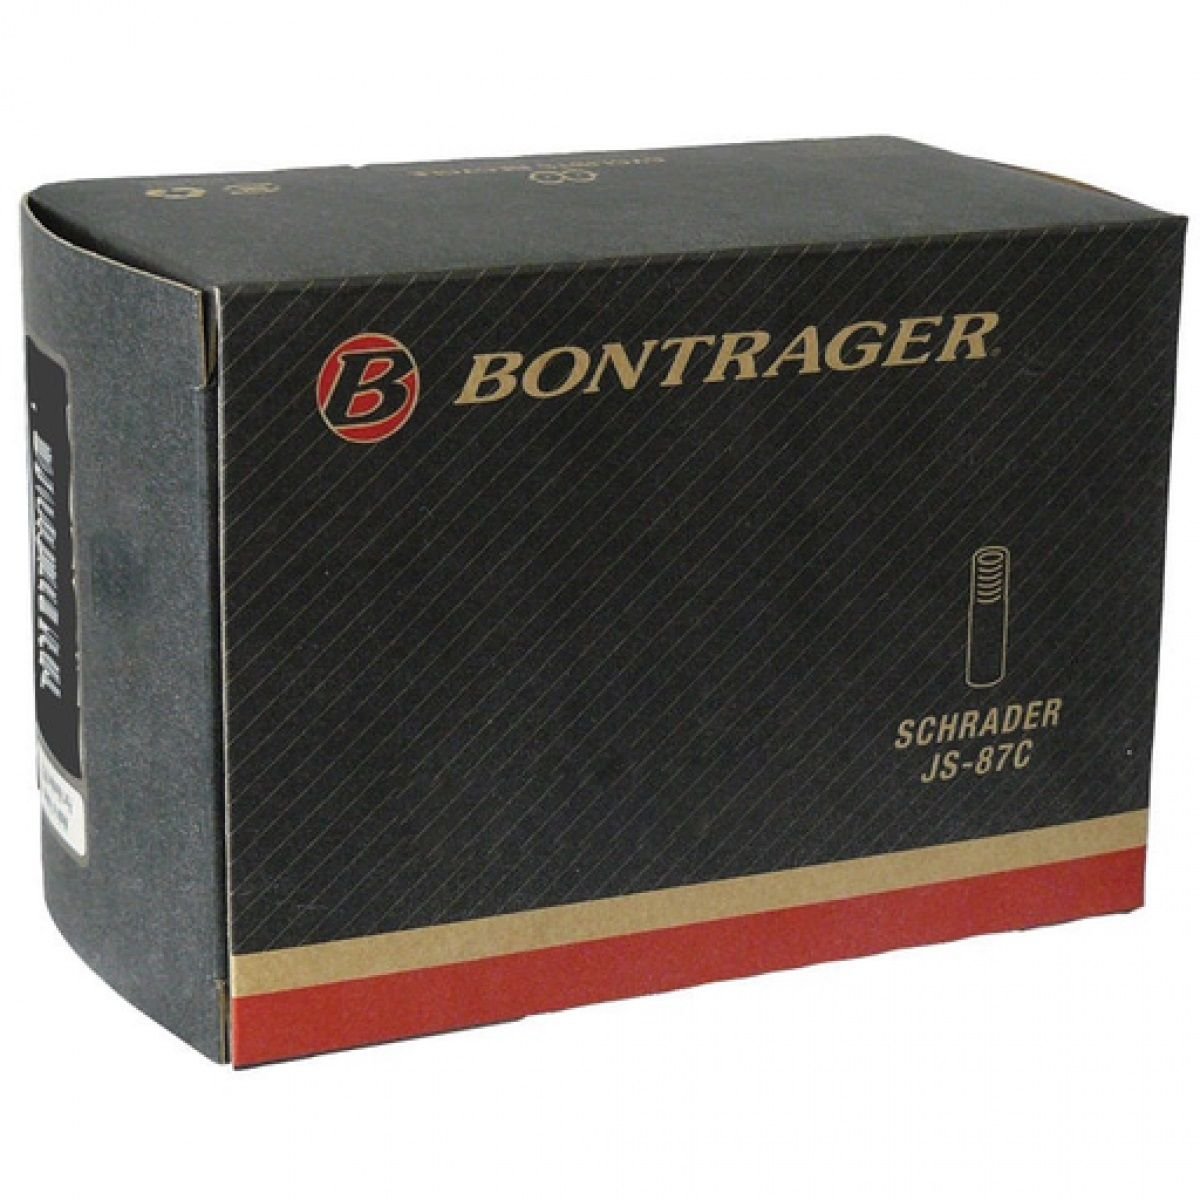 Камера велосипедная Bontrager Standard, 12 1/2X2 1/4, SV, TCG-66943 камера велосипедная bontrager standard 12 1 2x2 1 4 sv tcg 66943